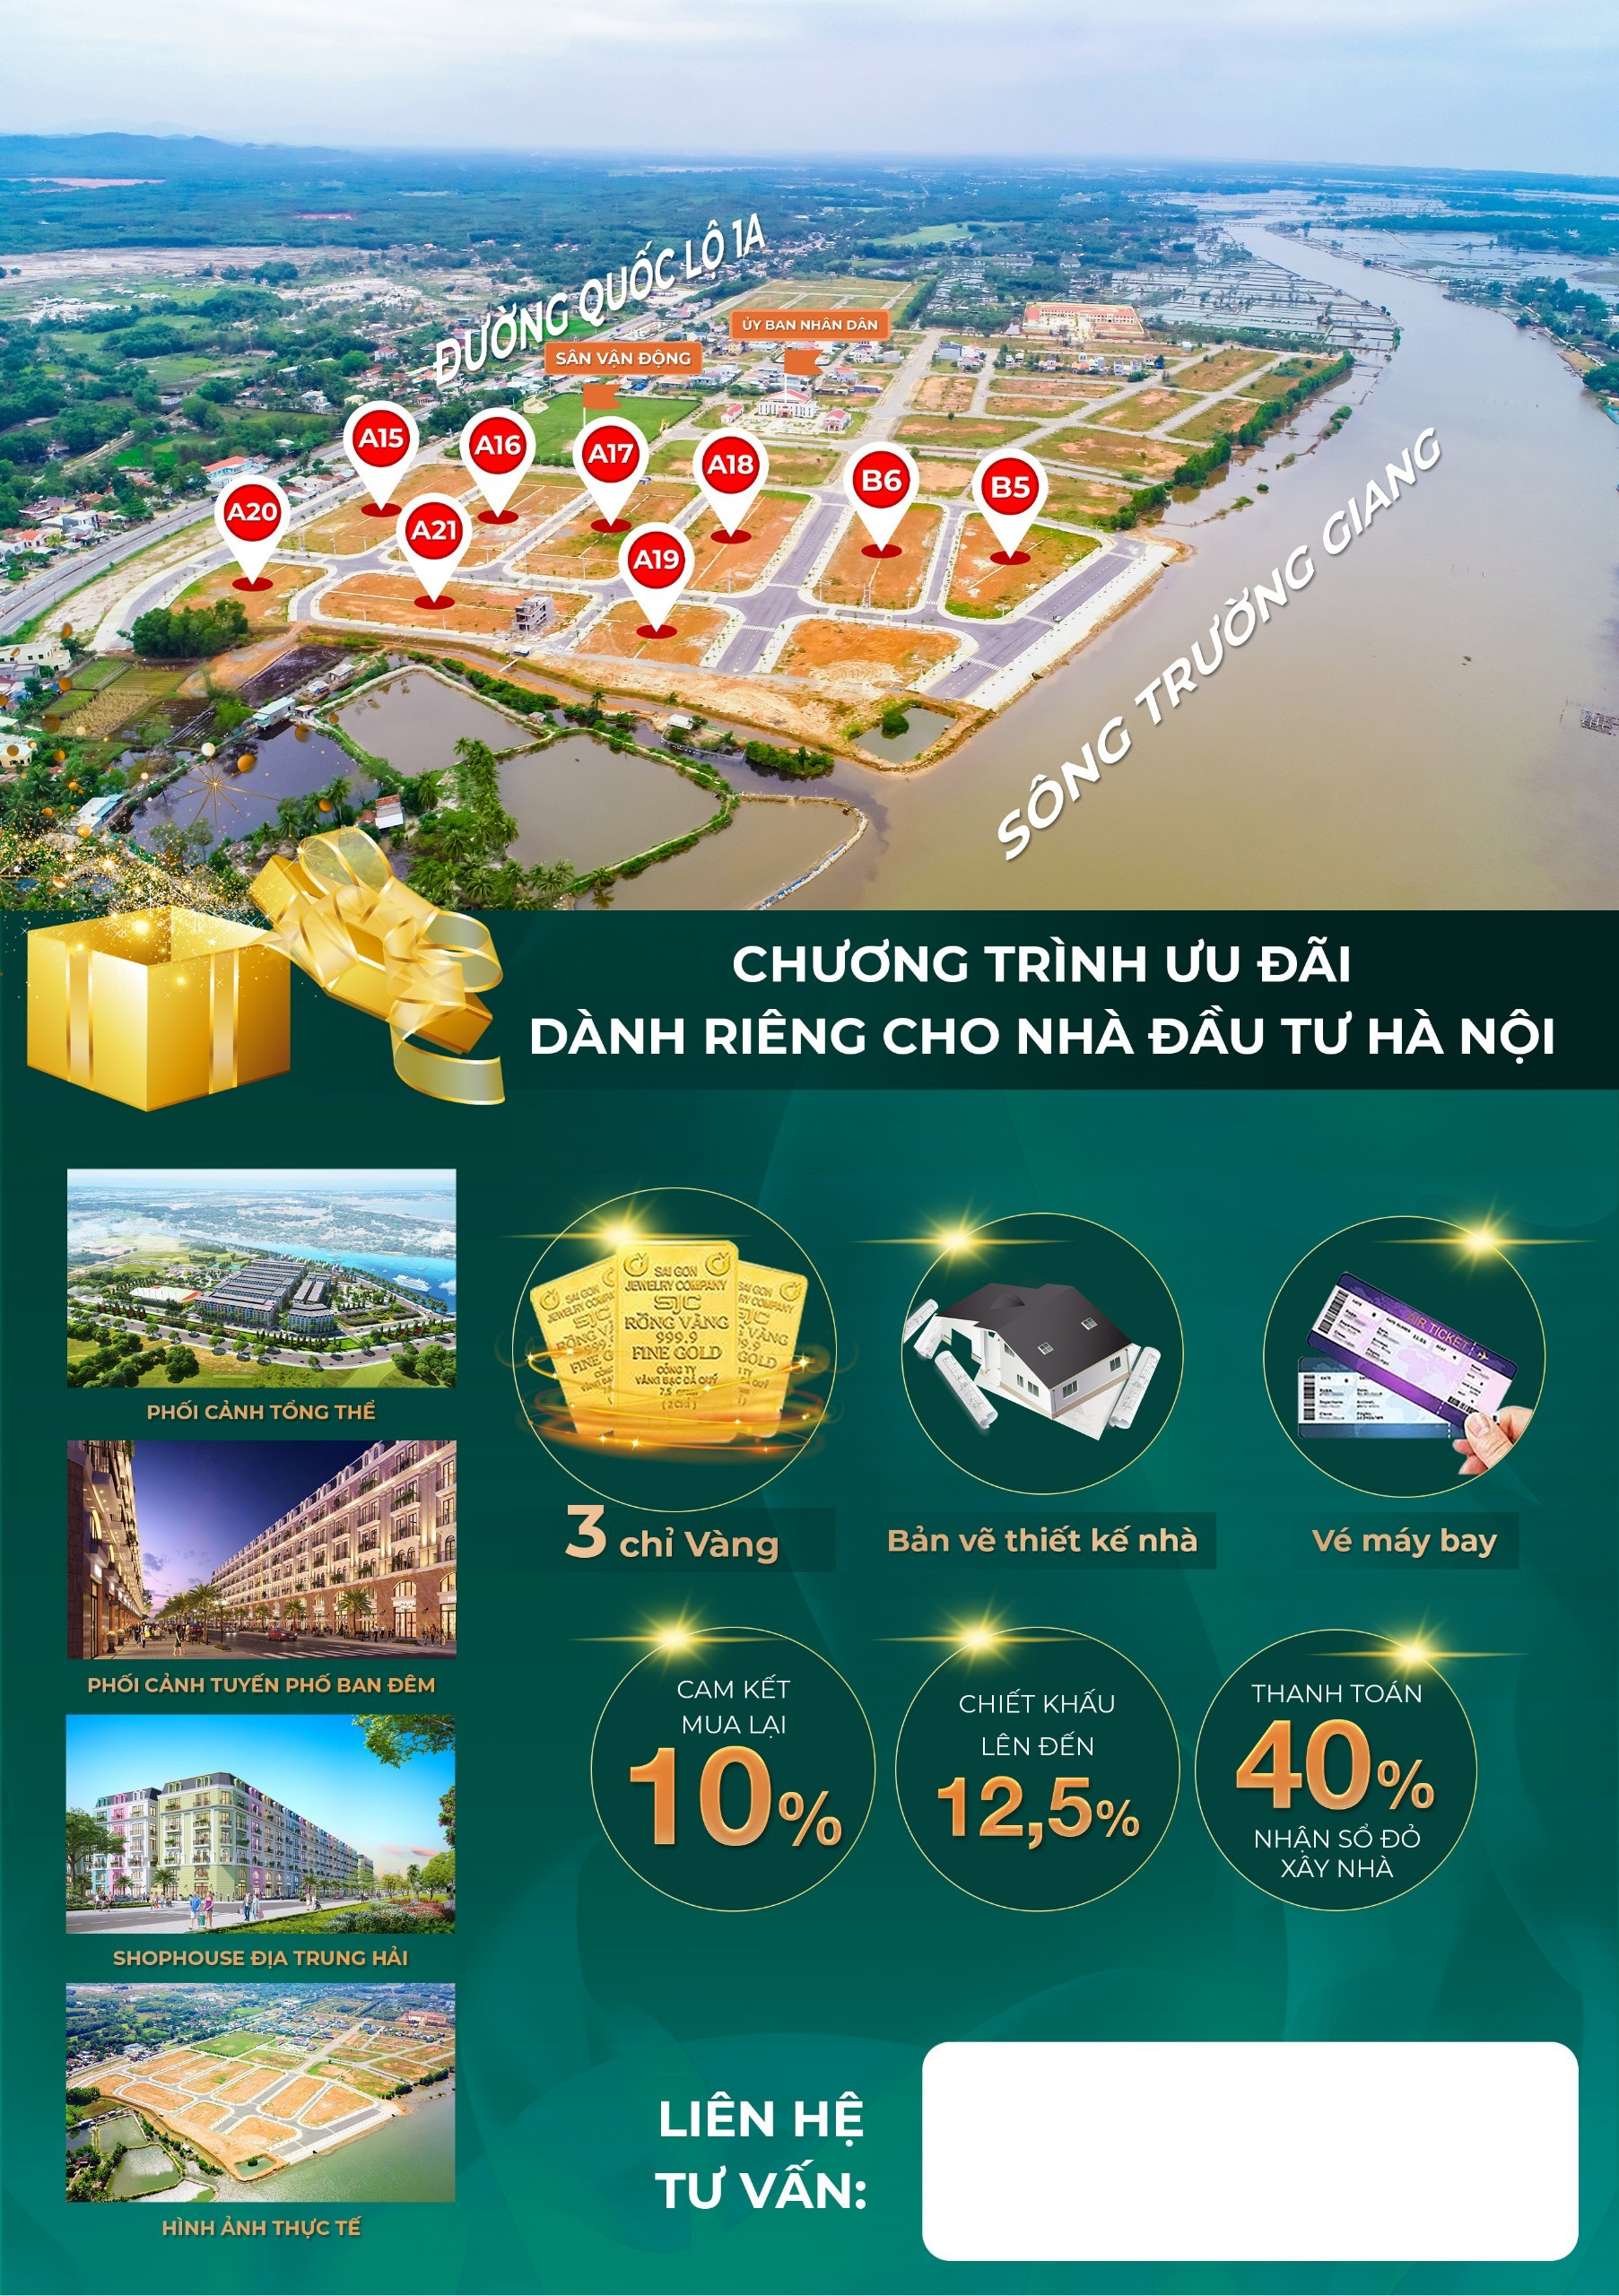 Các chính sách ưu đãi cho nhà đầu tư phía Bắc giao dịch Chu Lai Riverside